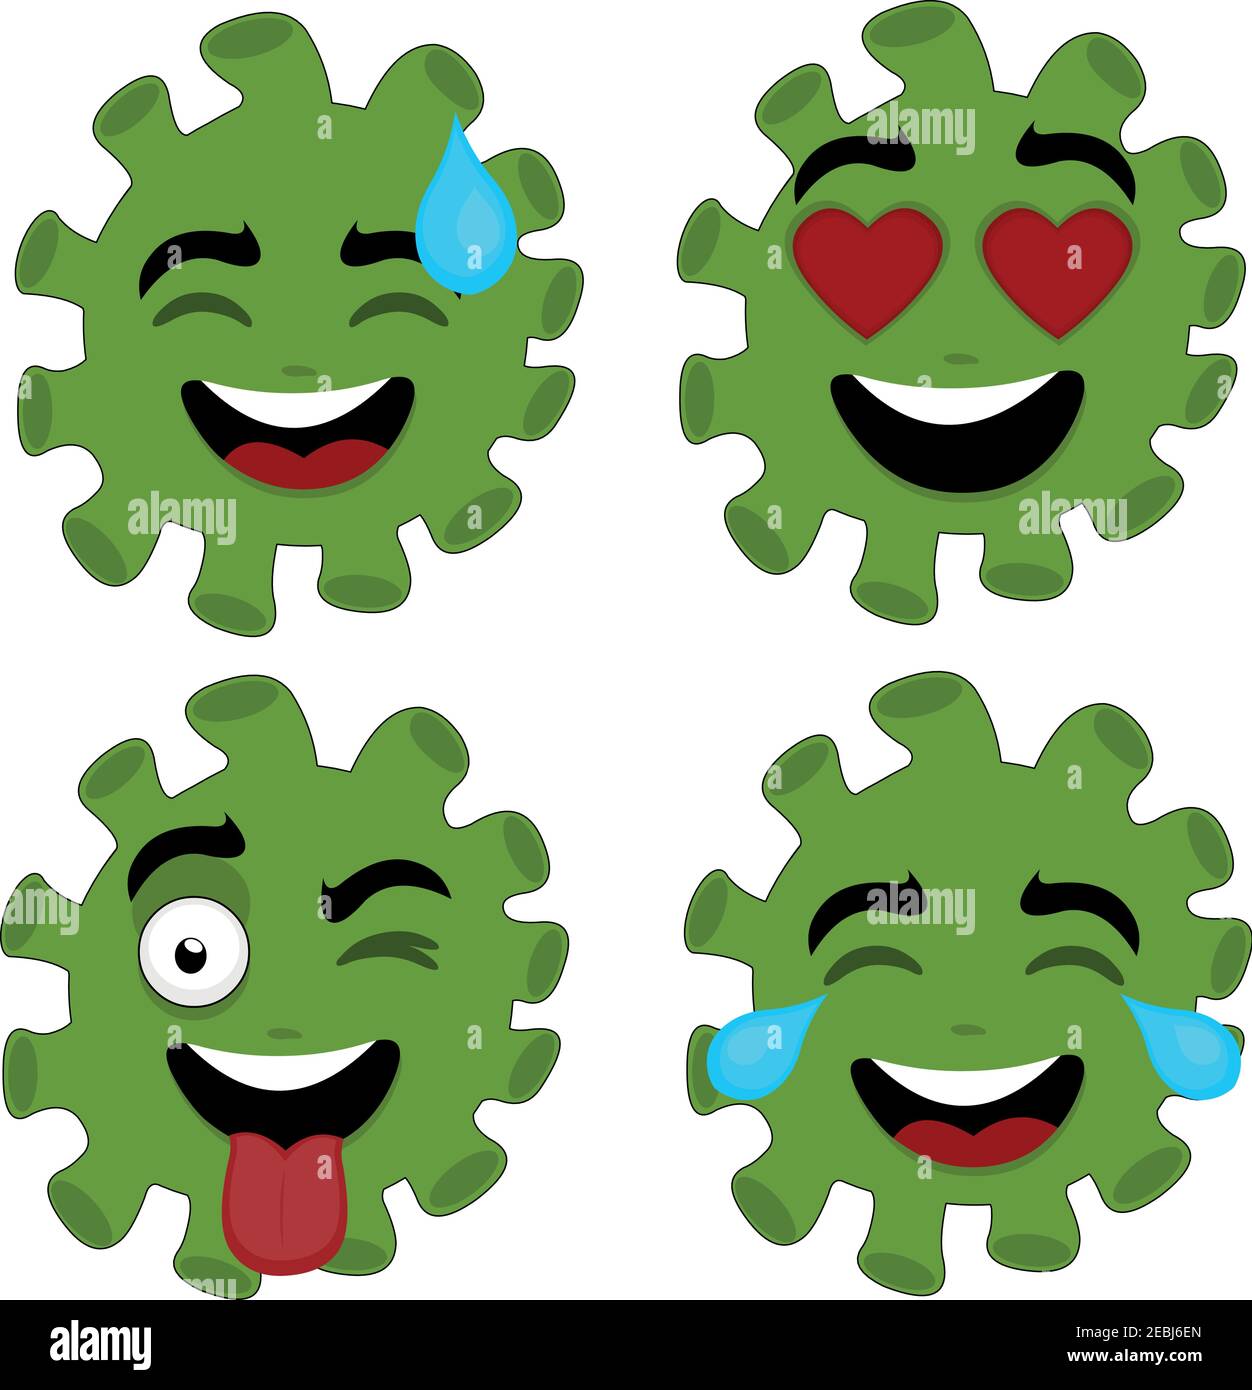 Illustrazione vettoriale delle emoticon dei personaggi di coronavirus cartoon con diverse espressioni felici Illustrazione Vettoriale